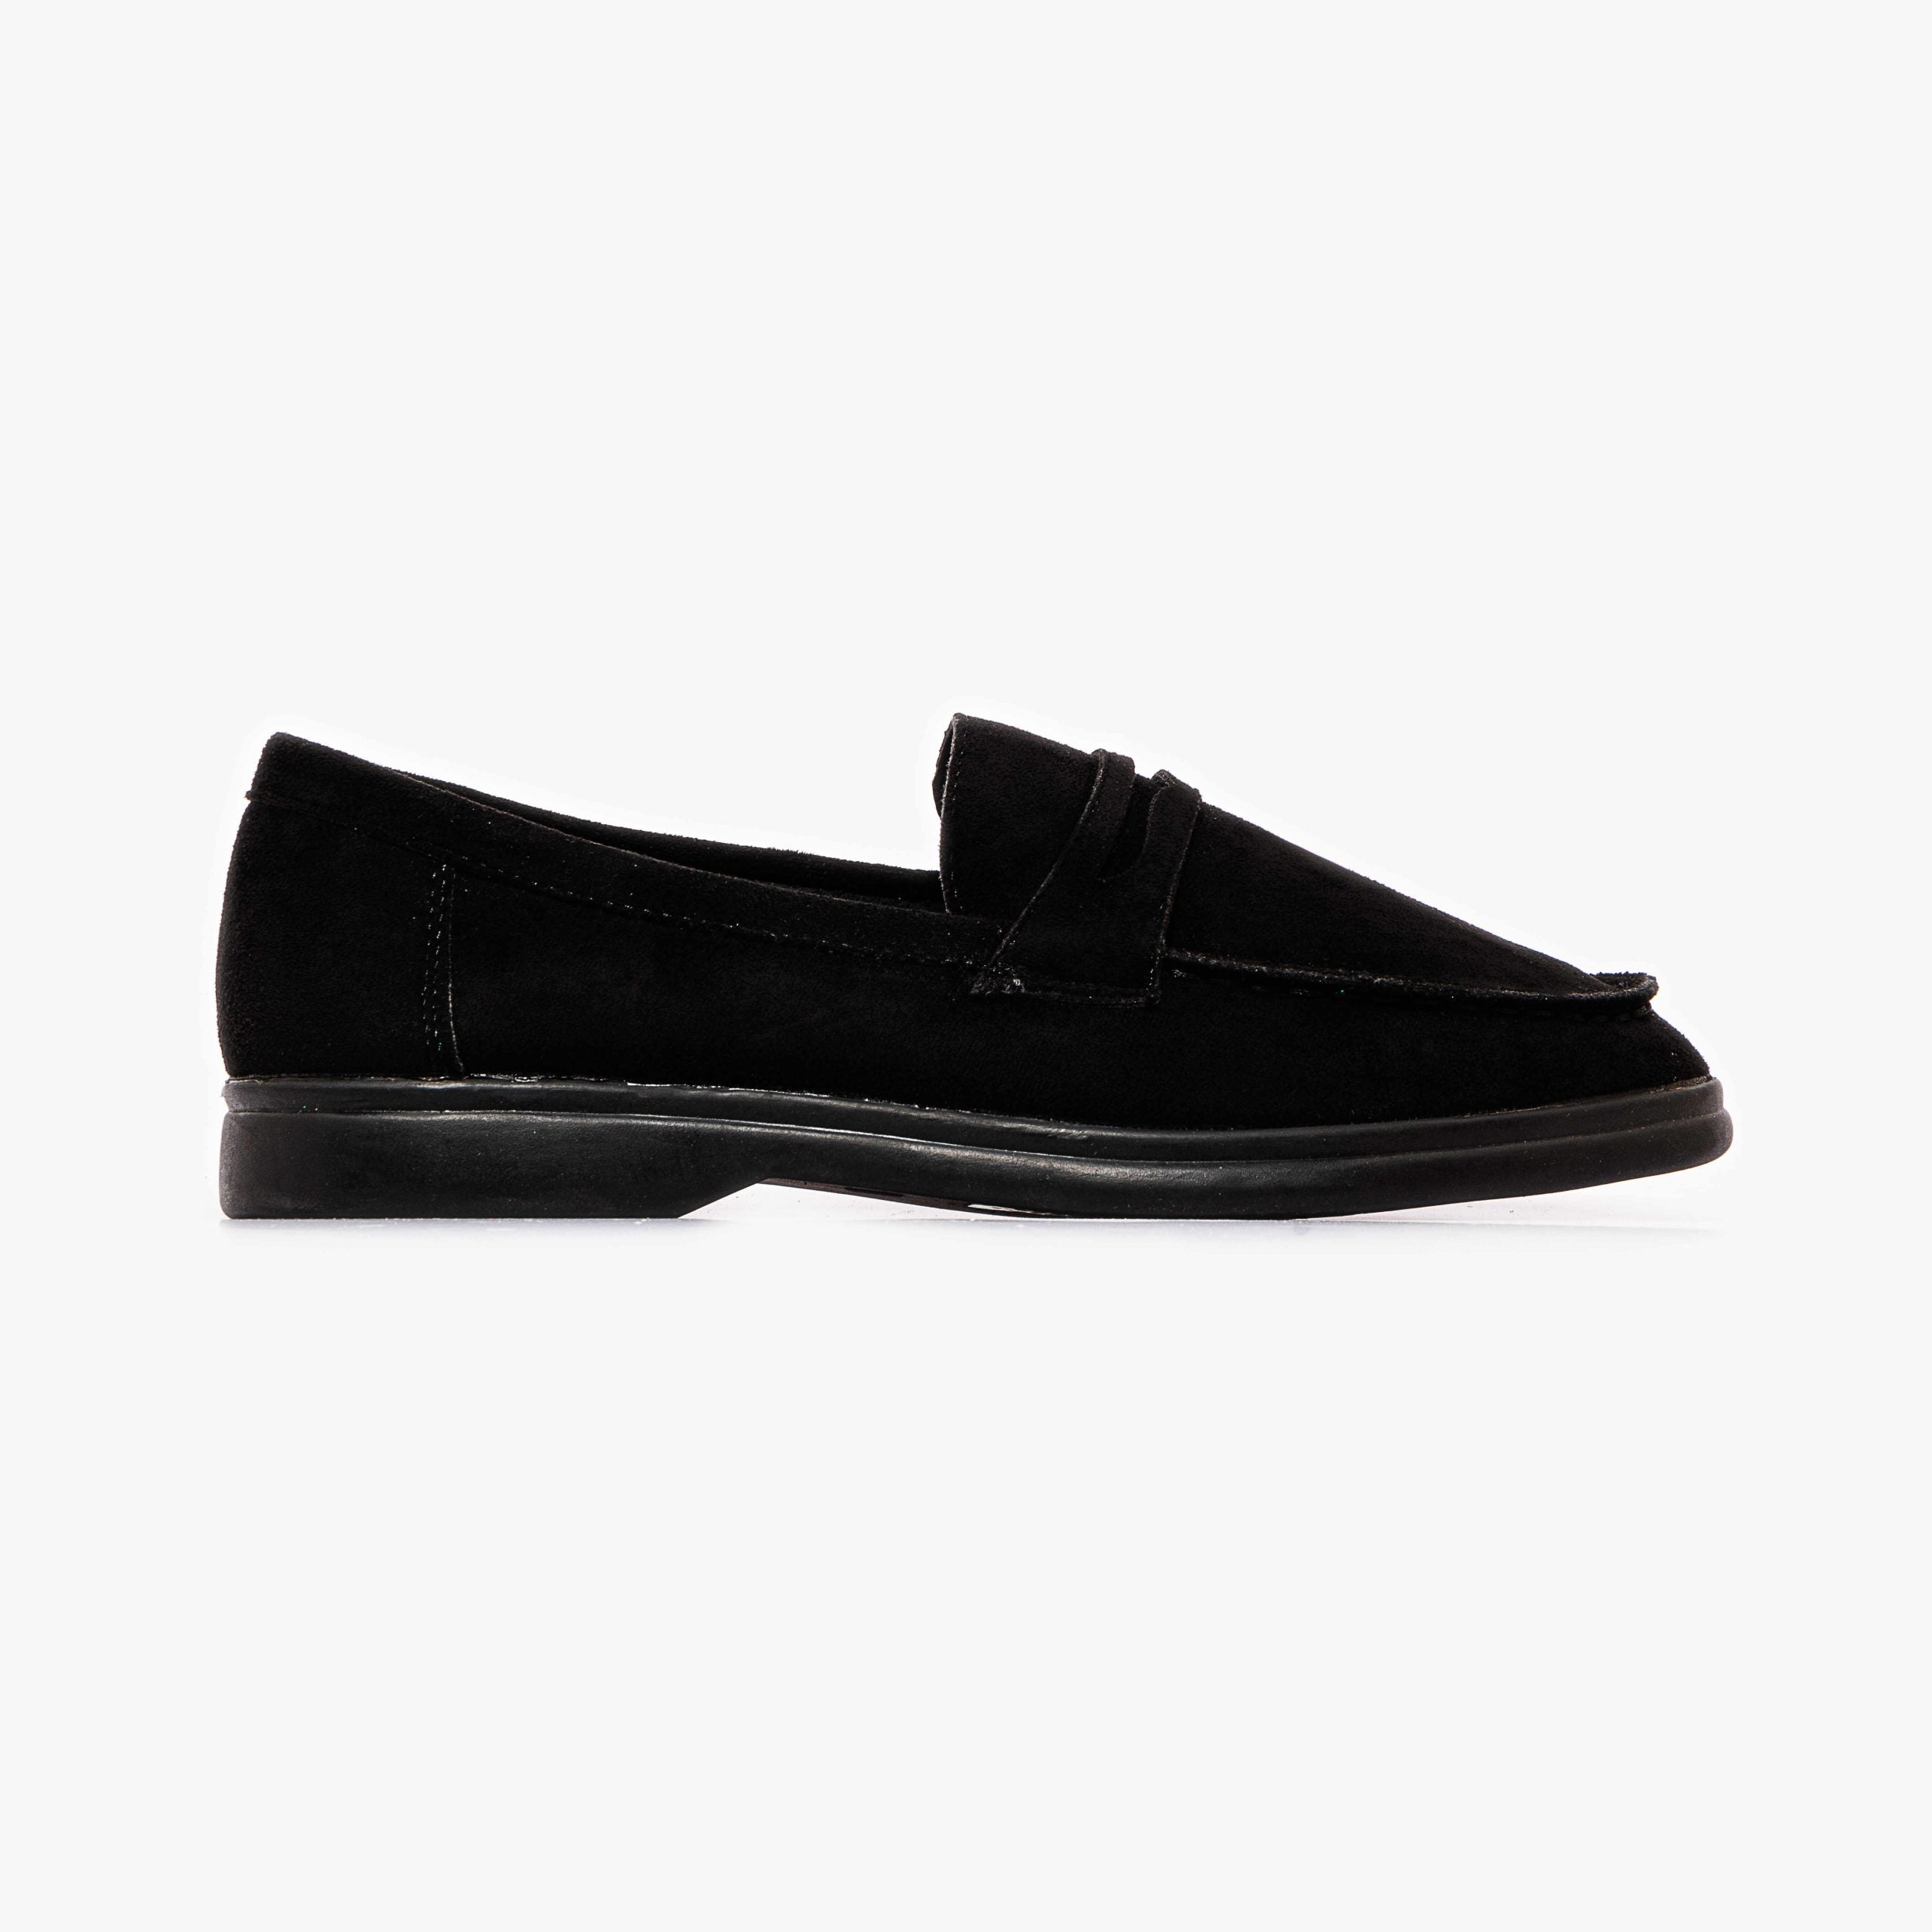 Shoeroom Flat loafers For Women -SR 2890